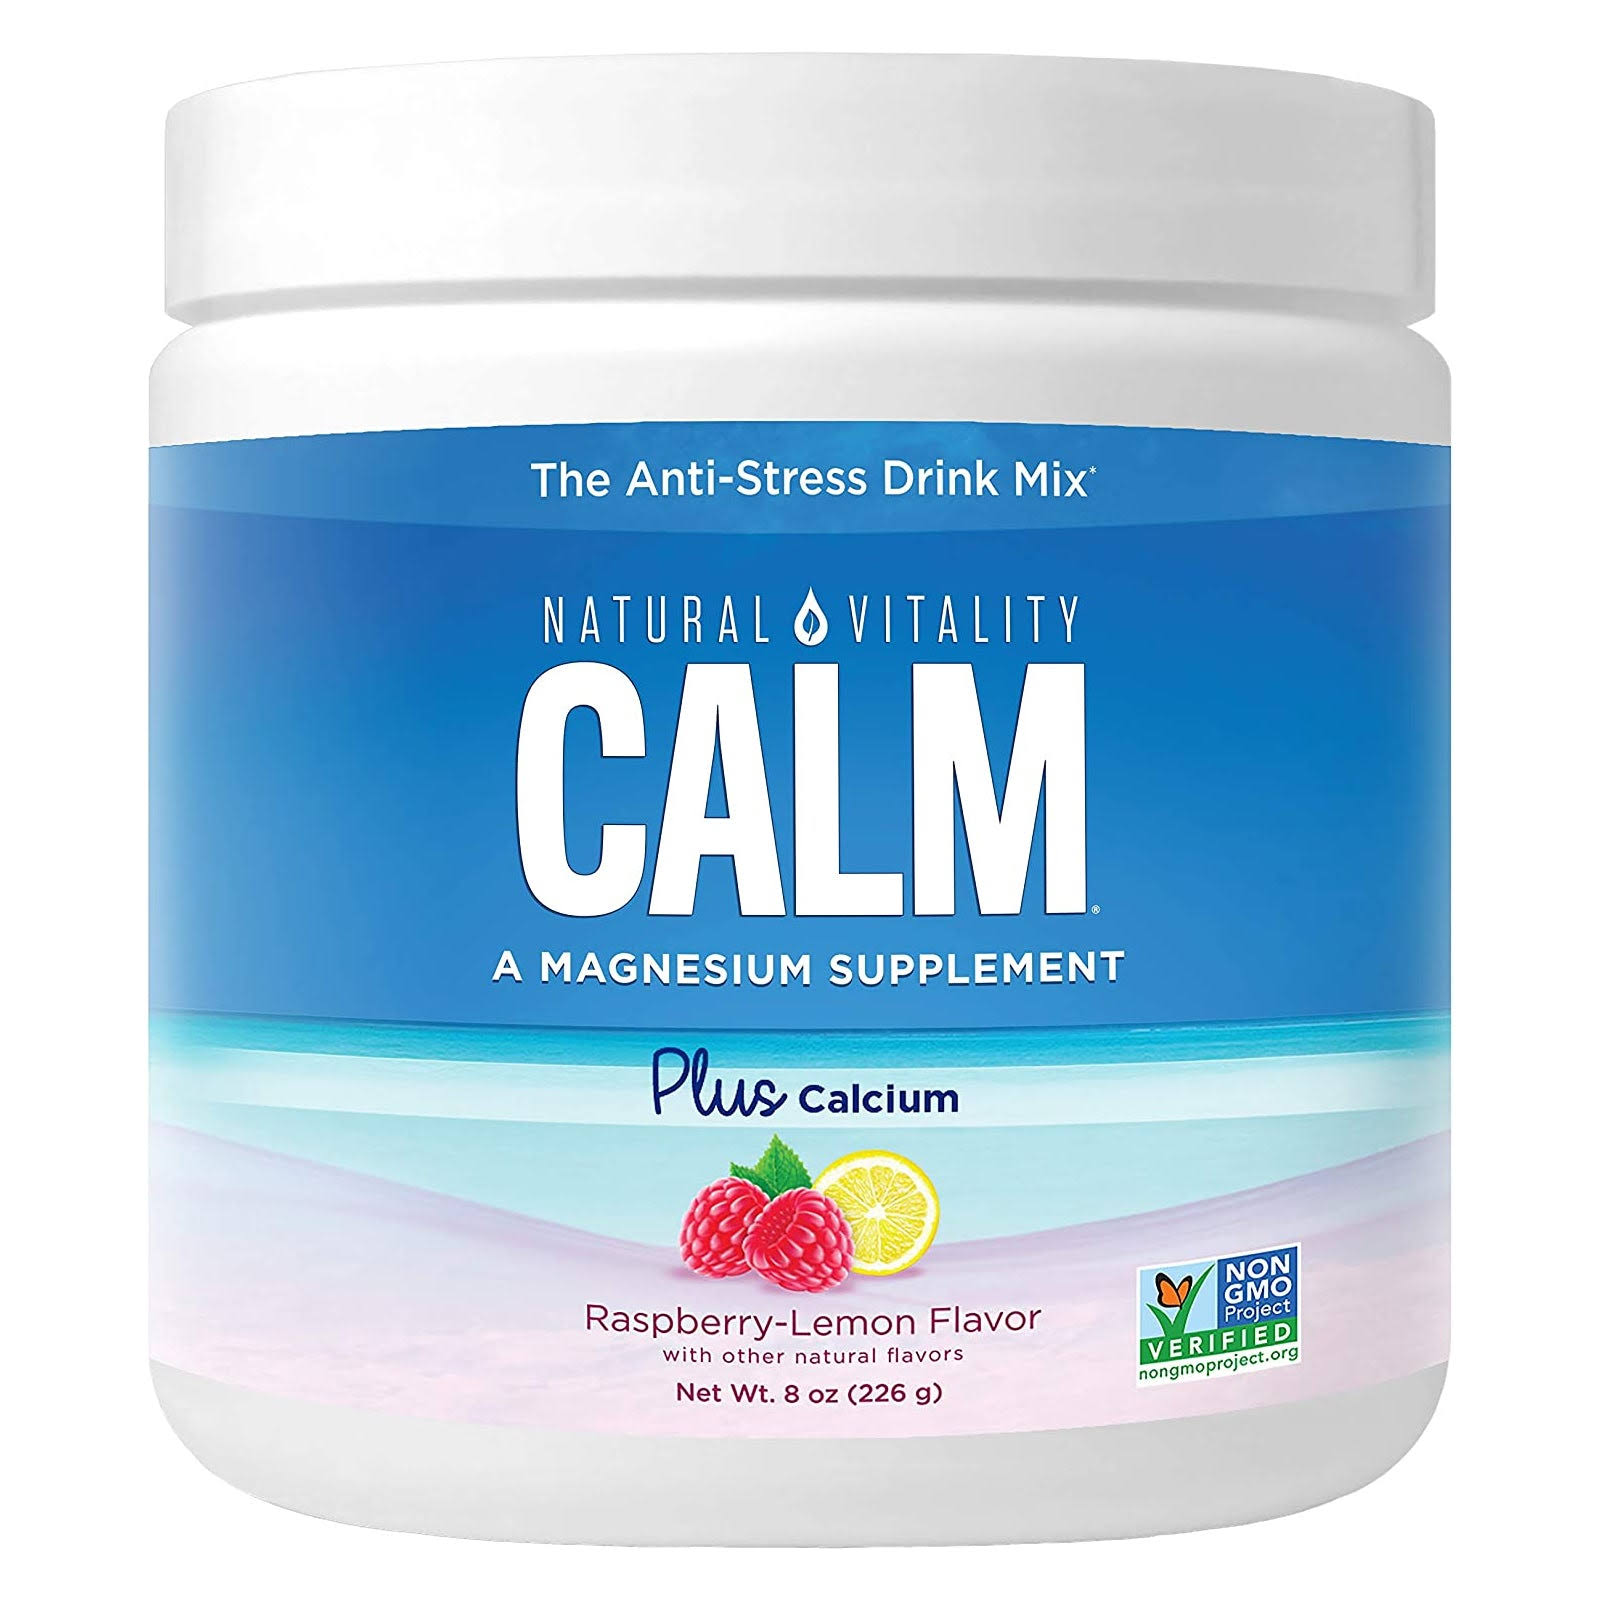 Natural Vitality Calm Magnesium Plus Calcium Raspberry Lemon 8 oz